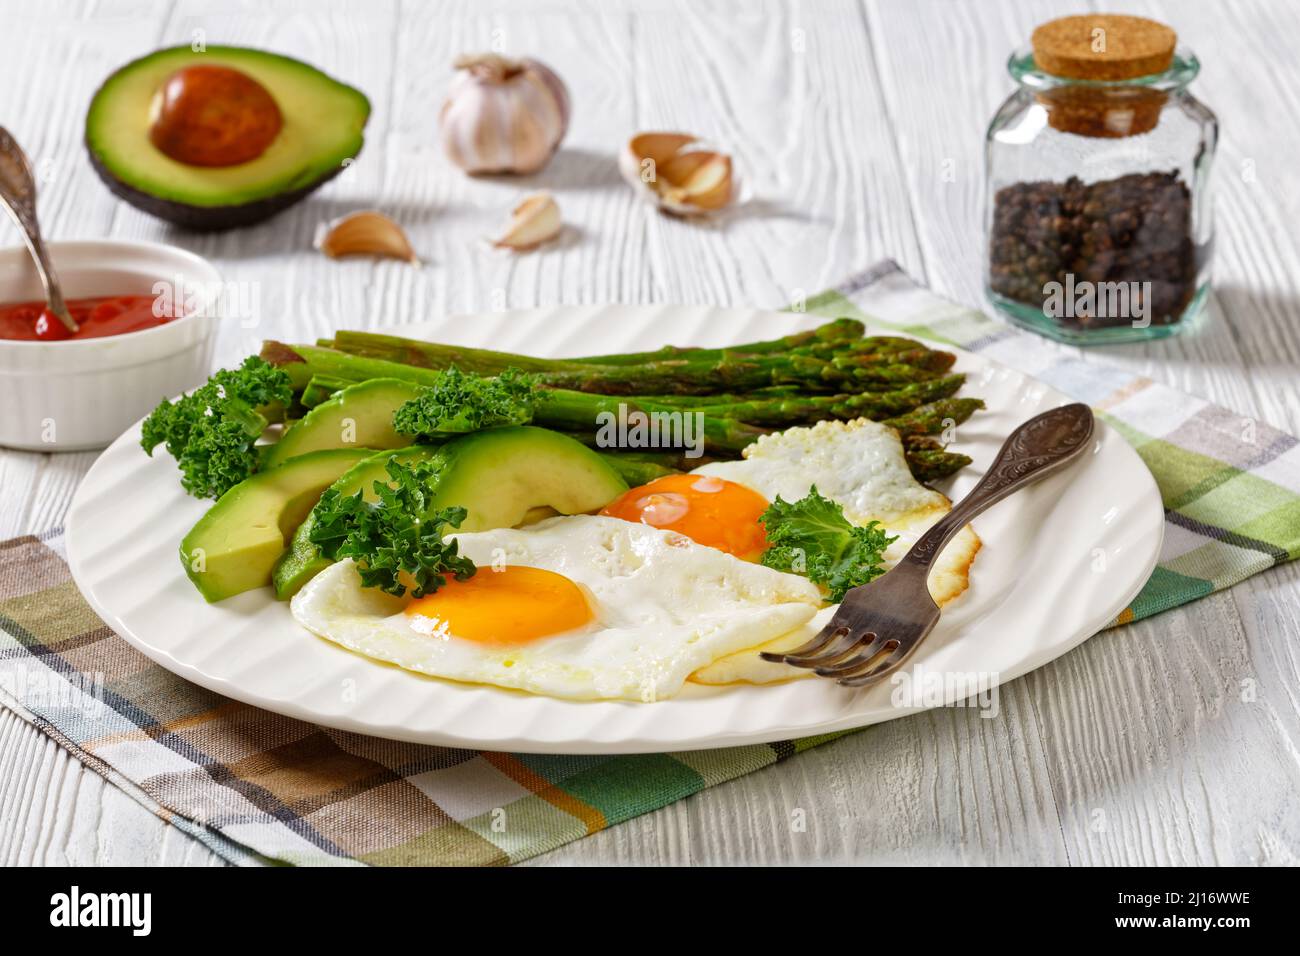 sana colazione di asparagi arrosto, avocado fresco maturo e uova fritte con tuorli runny su un piatto bianco, vista orizzontale, primo piano Foto Stock